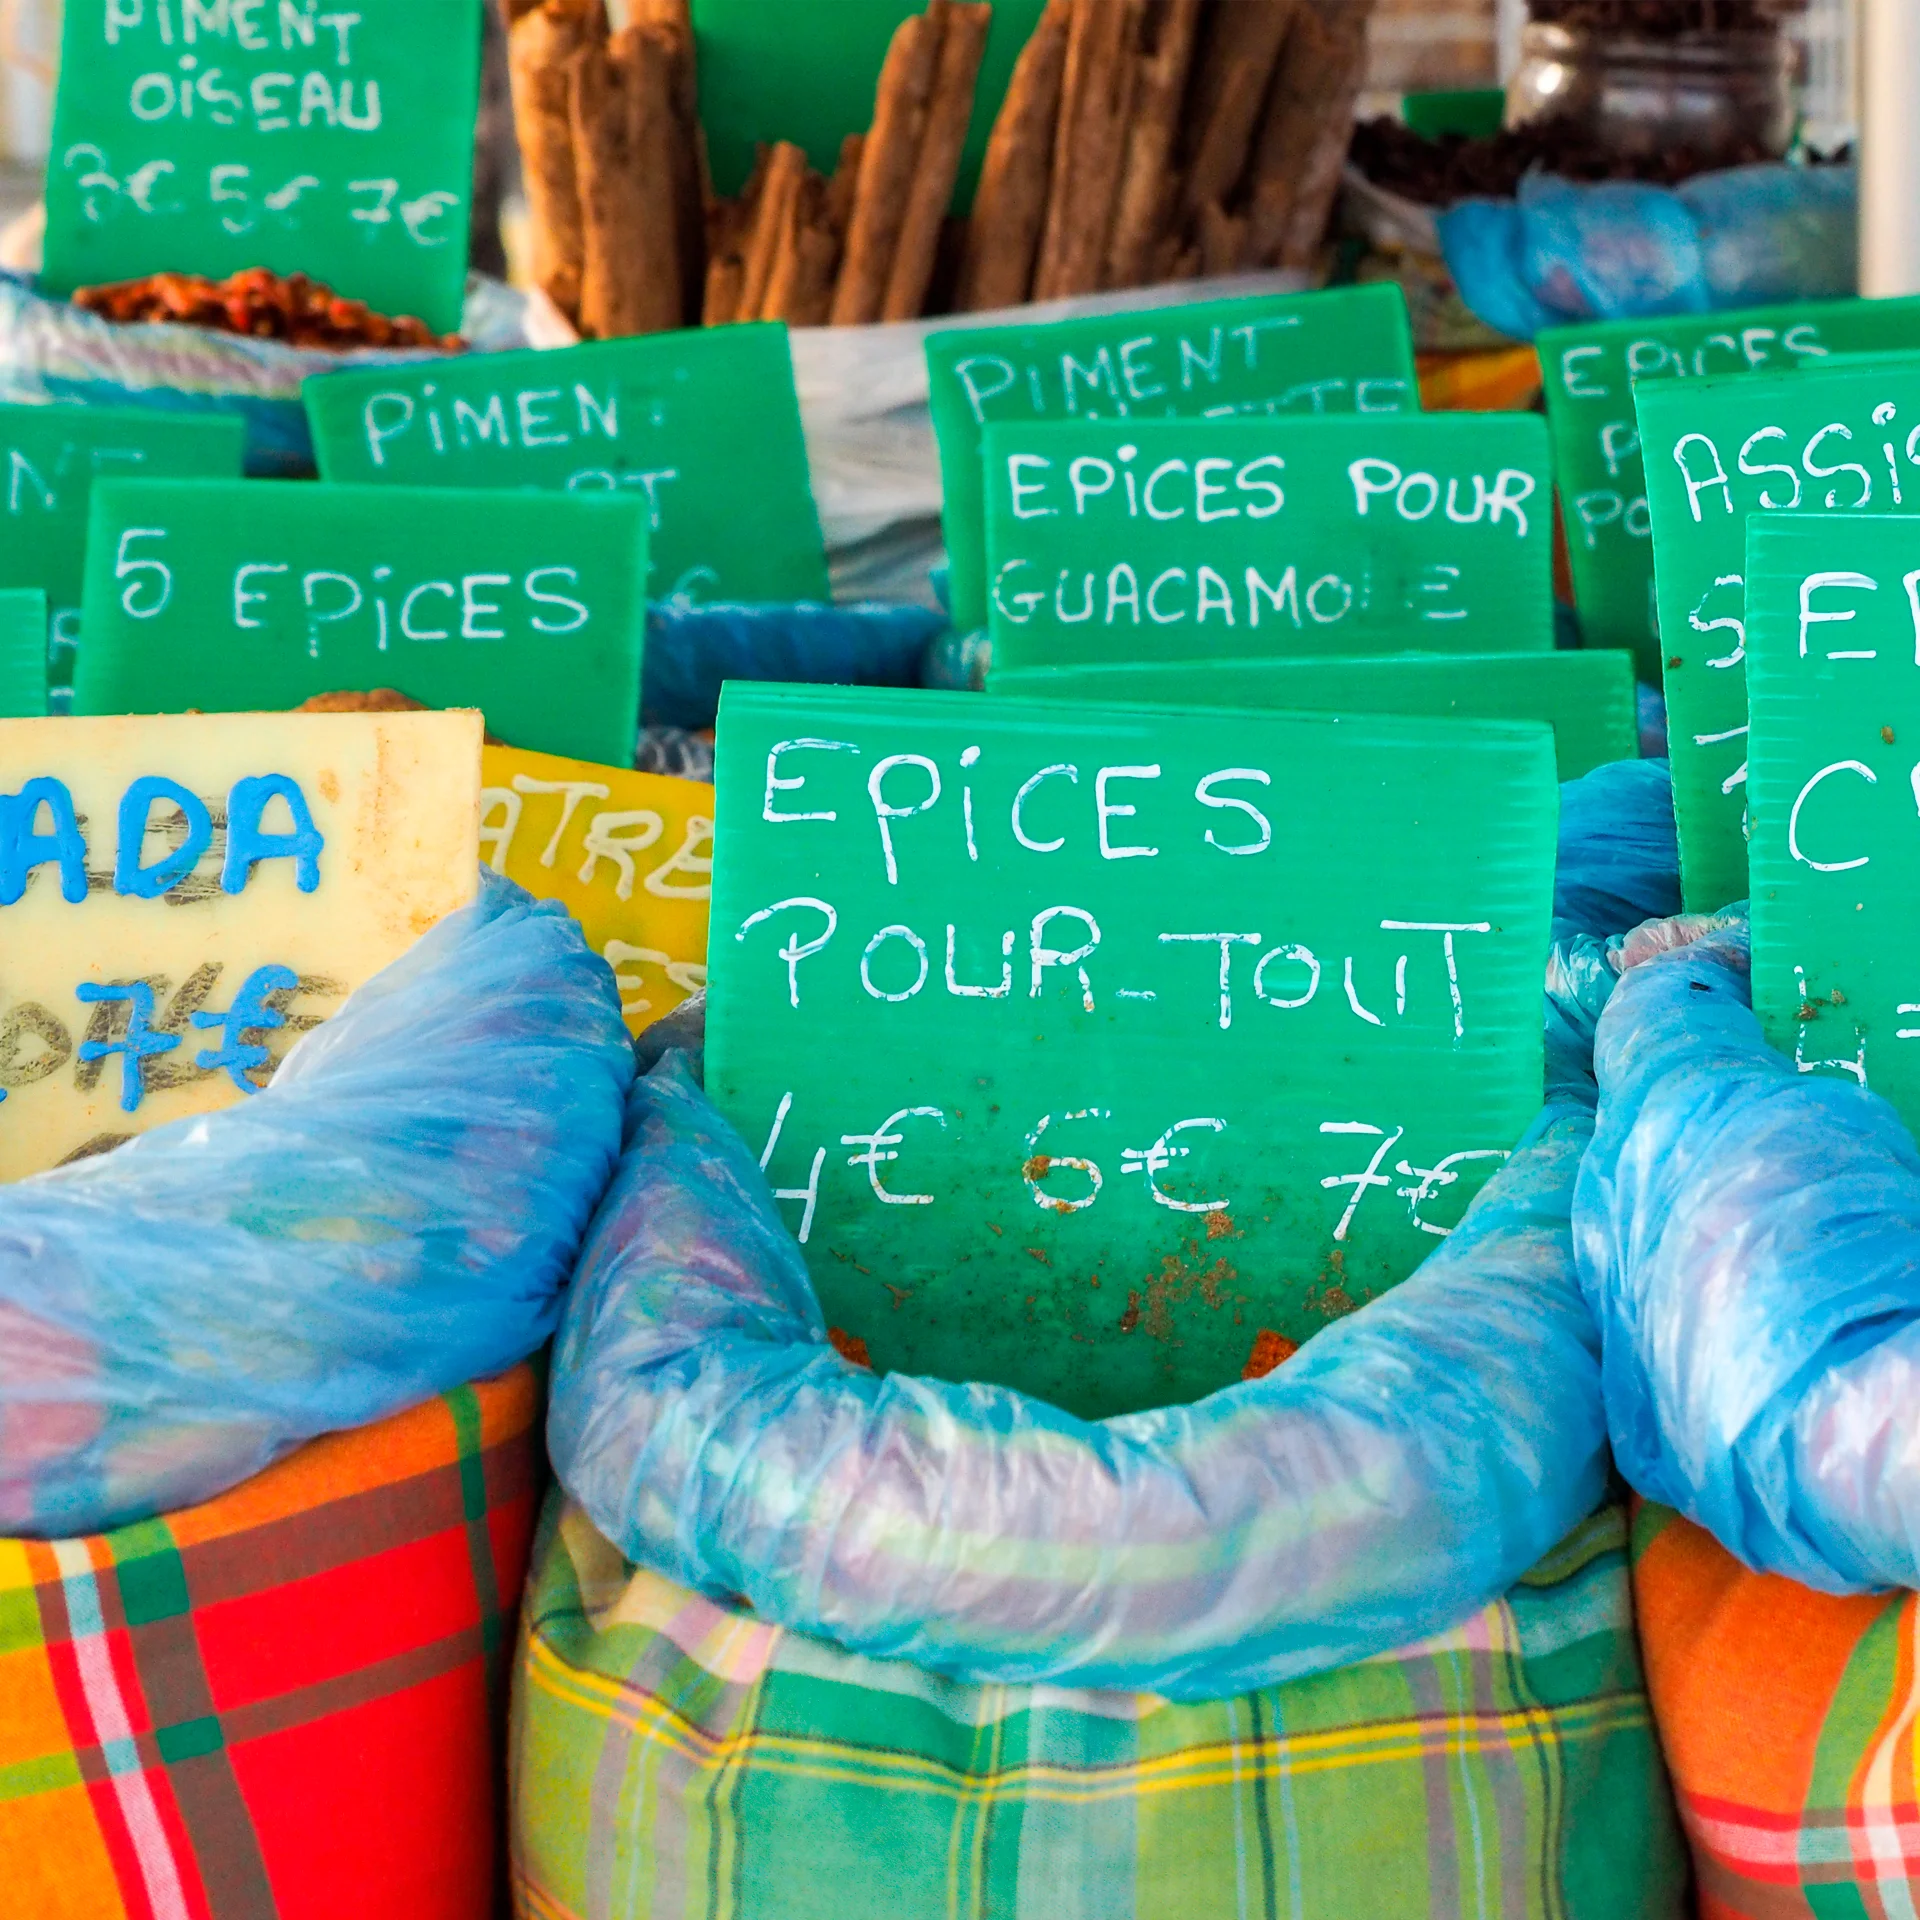 Mercato locale di Martinica